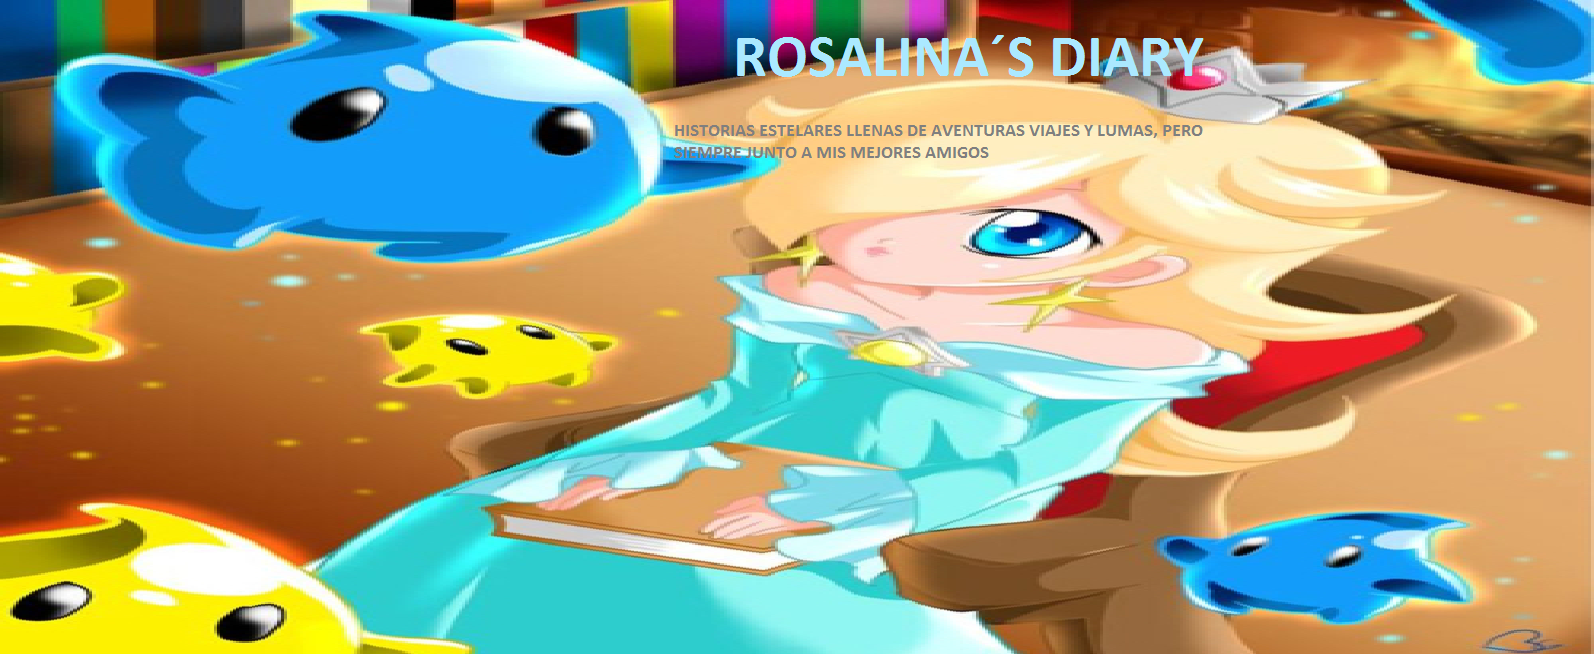 EL DIARIO DE ROSALINA